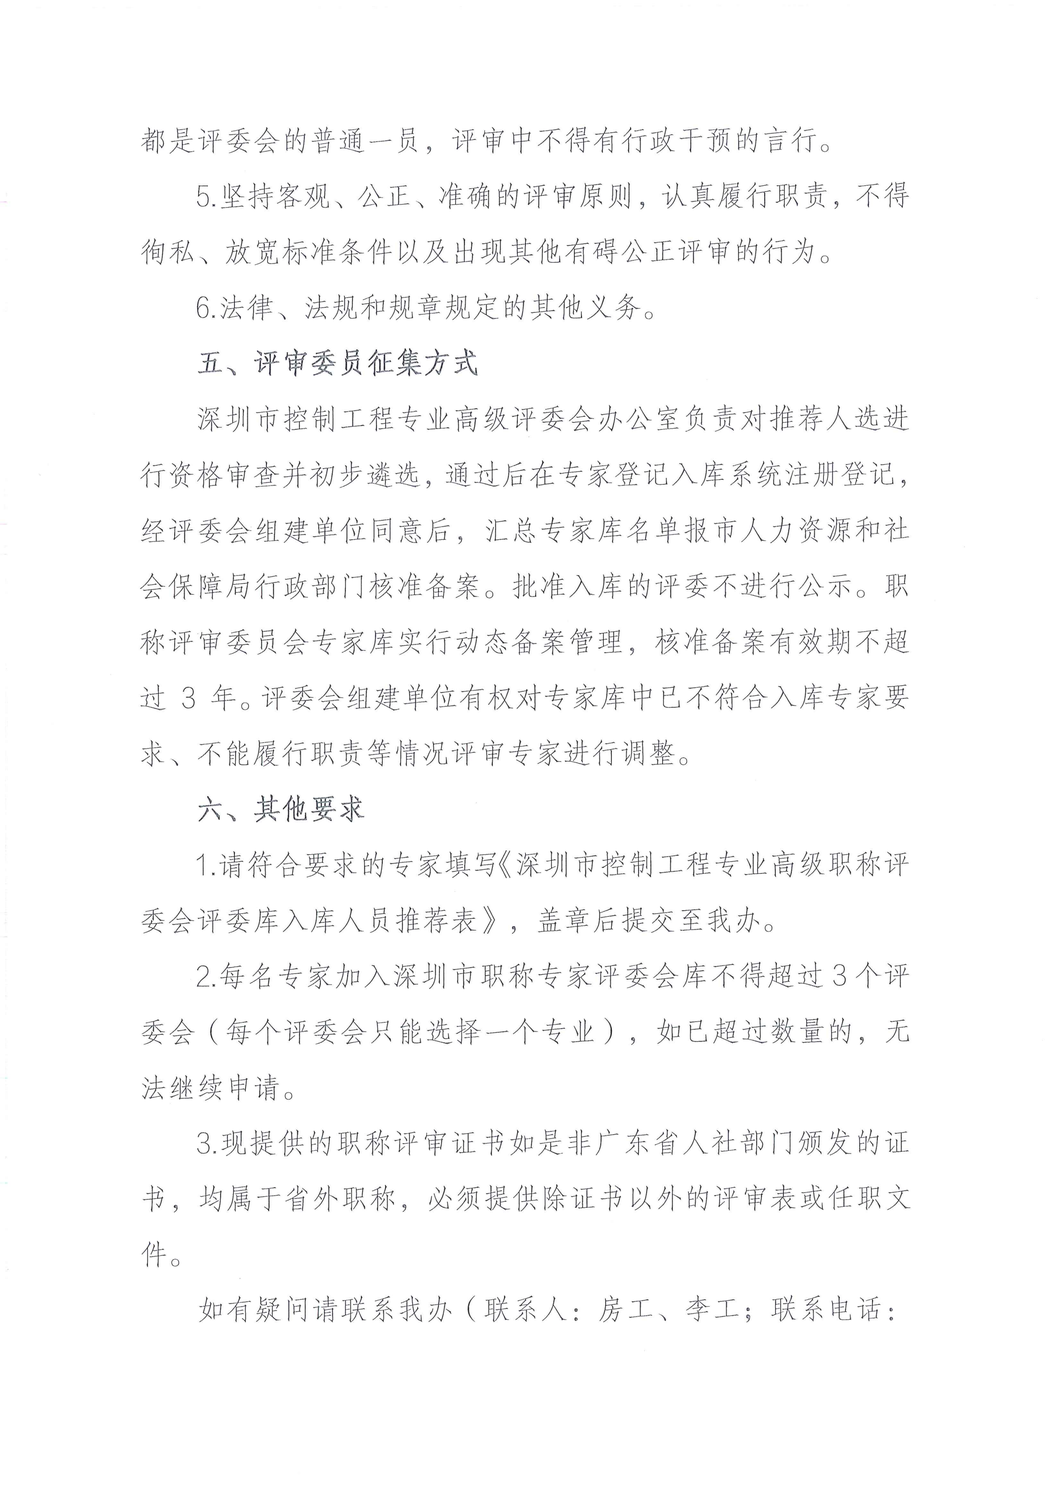 关于征集深圳市控制工程专业高级职称评审委员会评委的公告_02.png